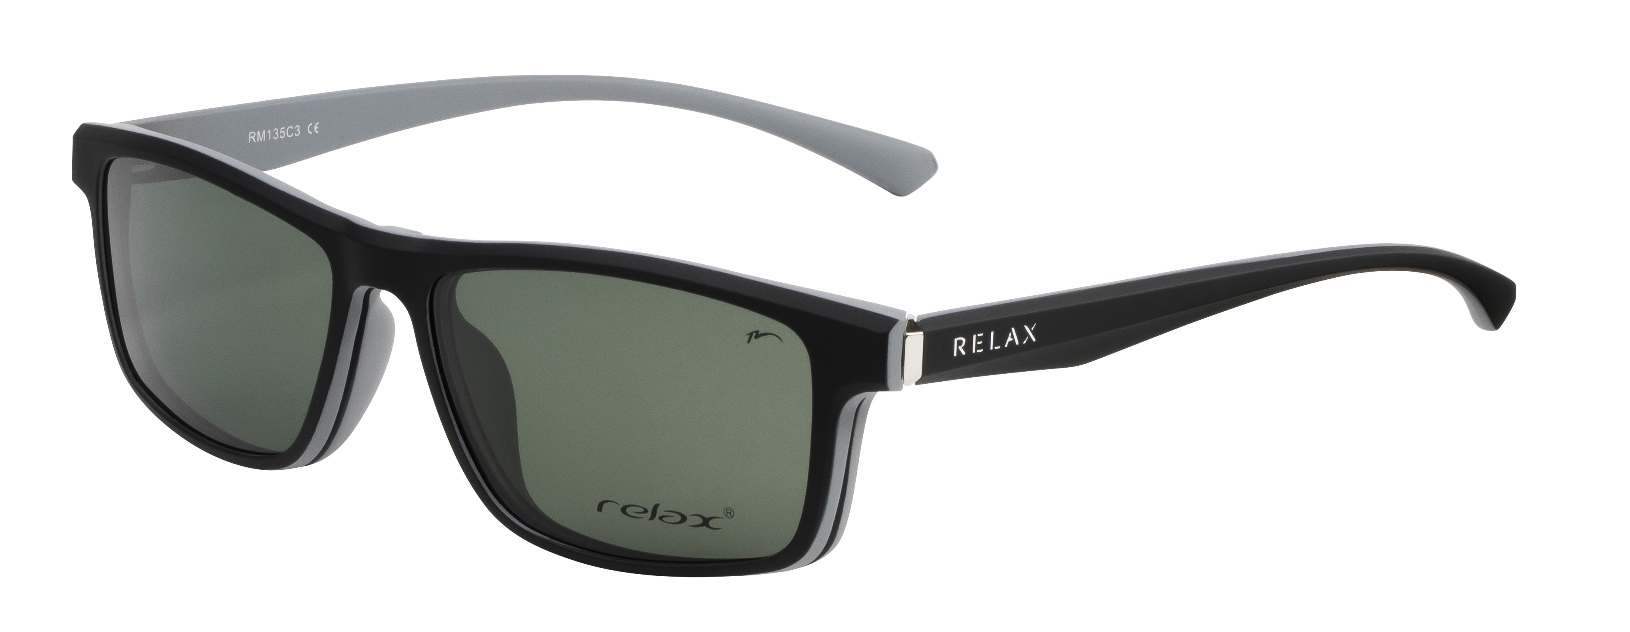 Optical frames Relax Bern RM135C3